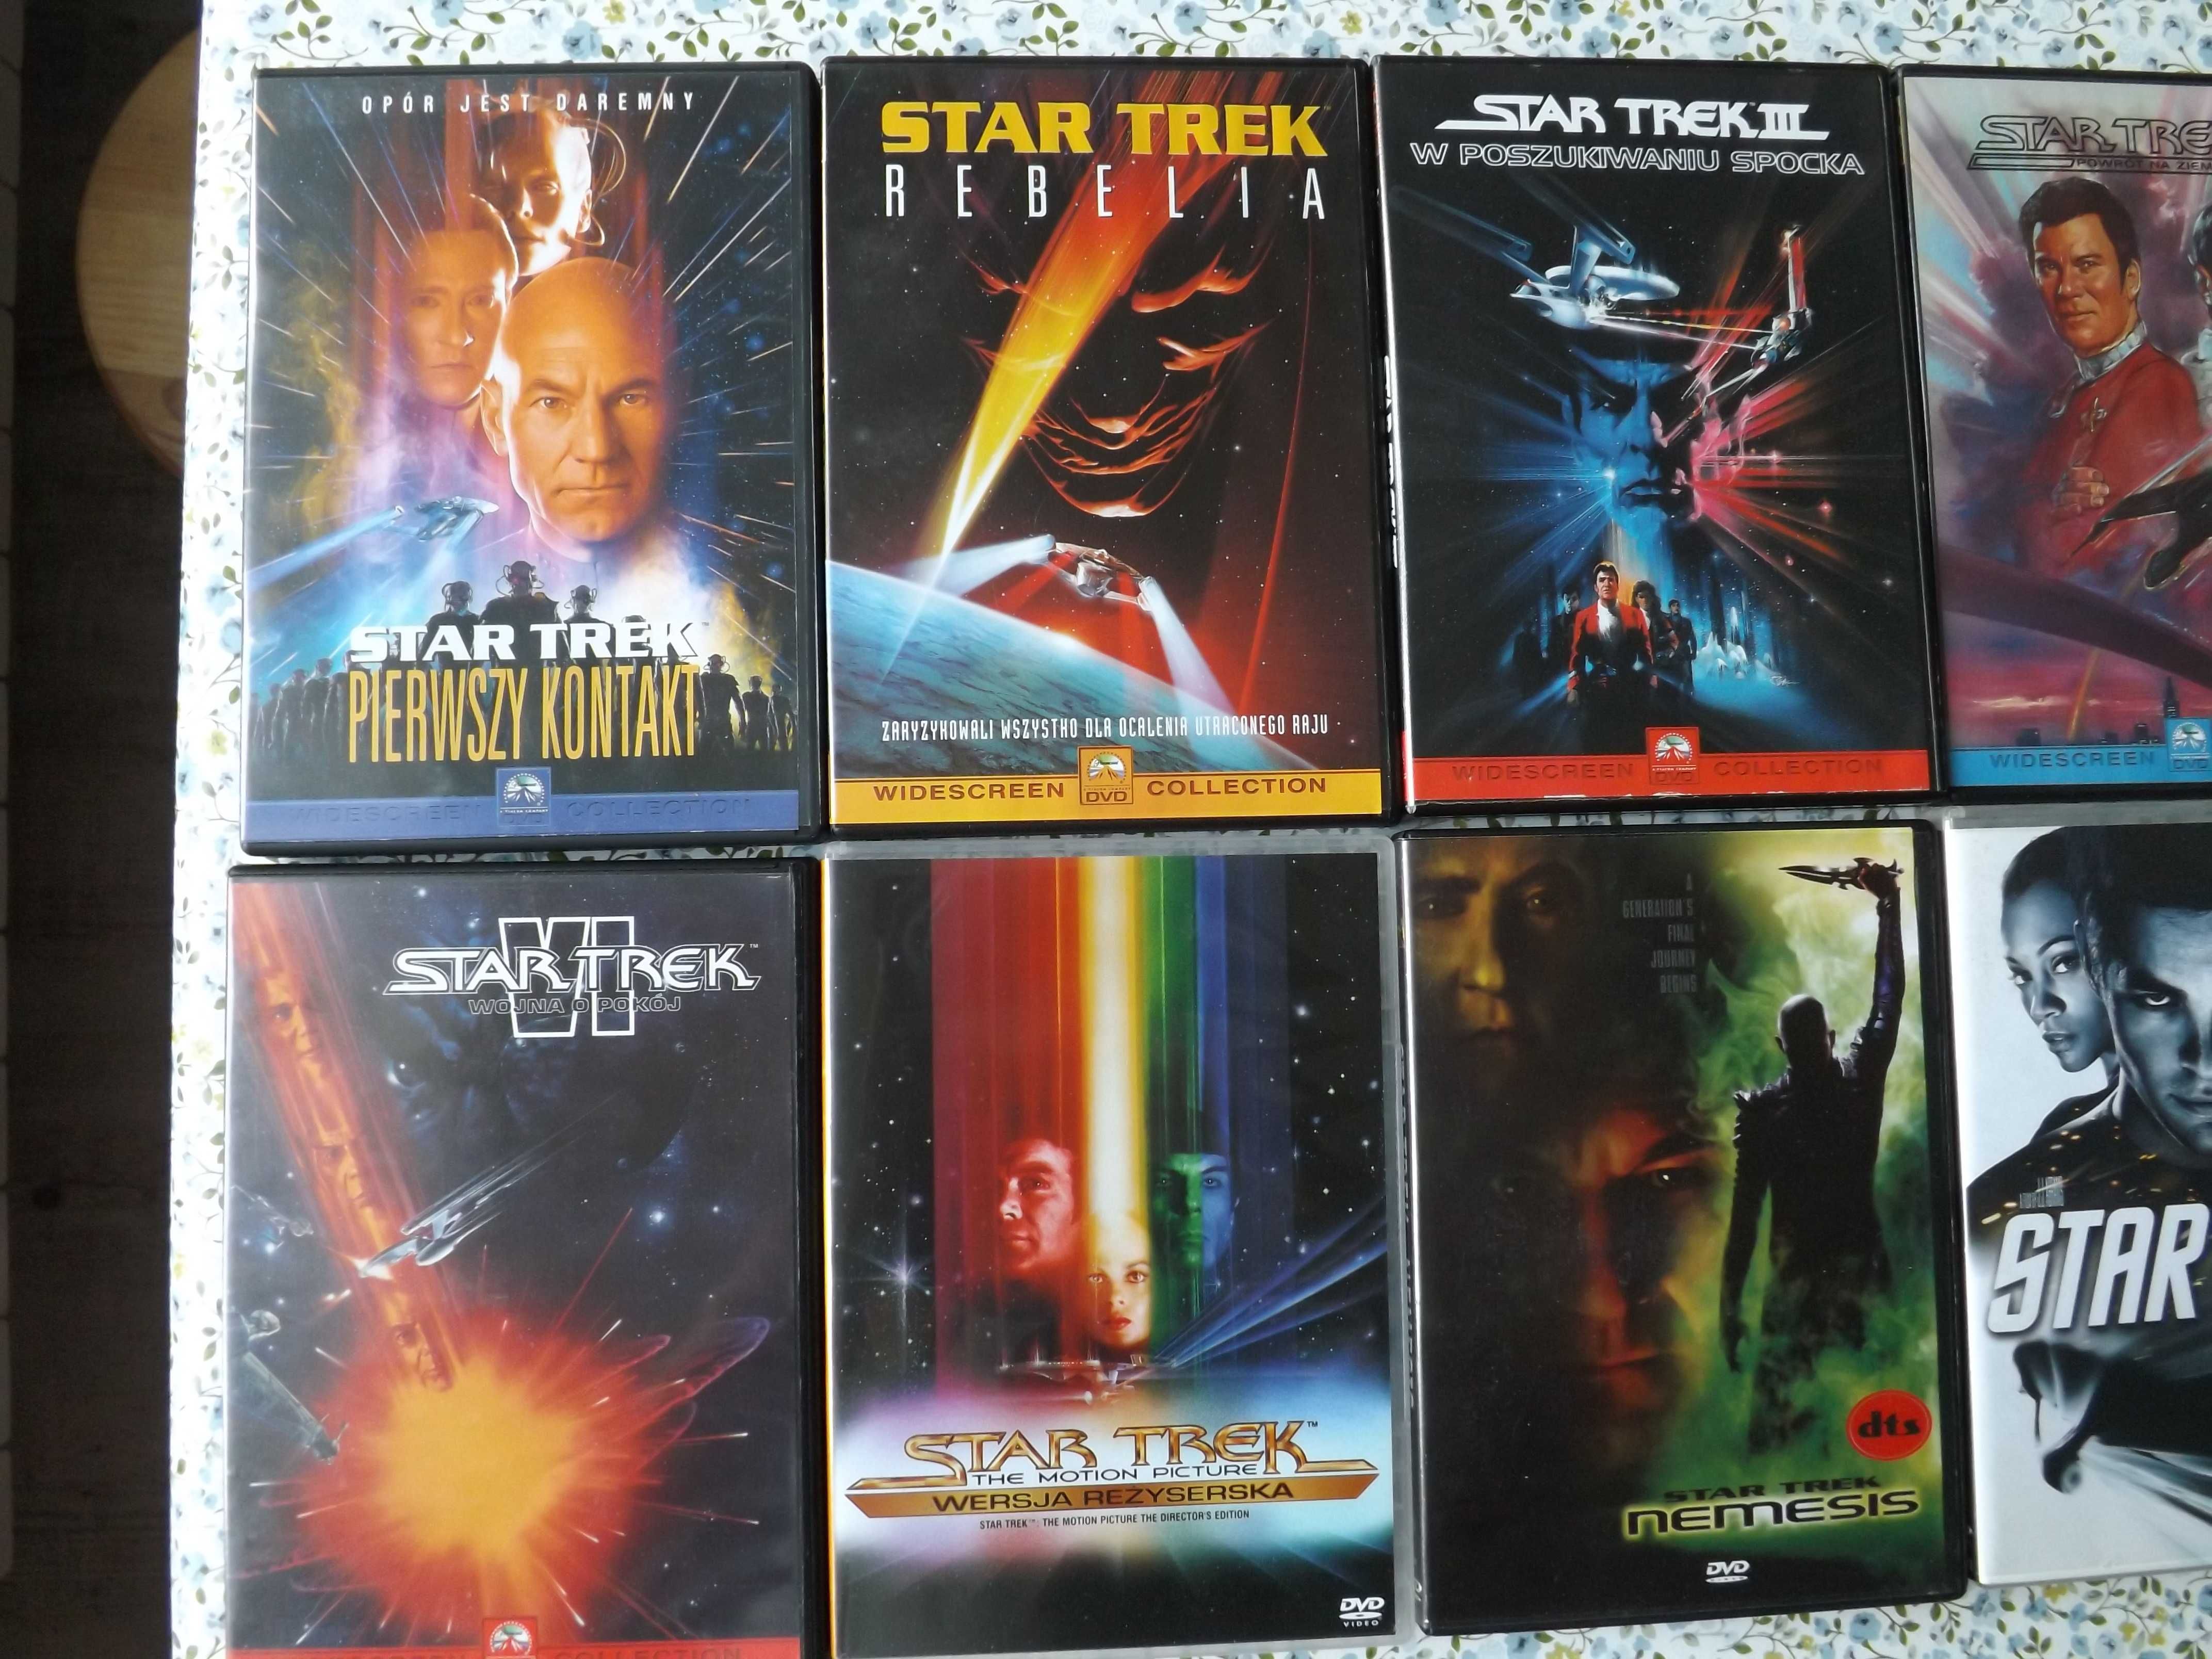 Star Trek filmy zestaw 12 dvd bajki kosmos polskie